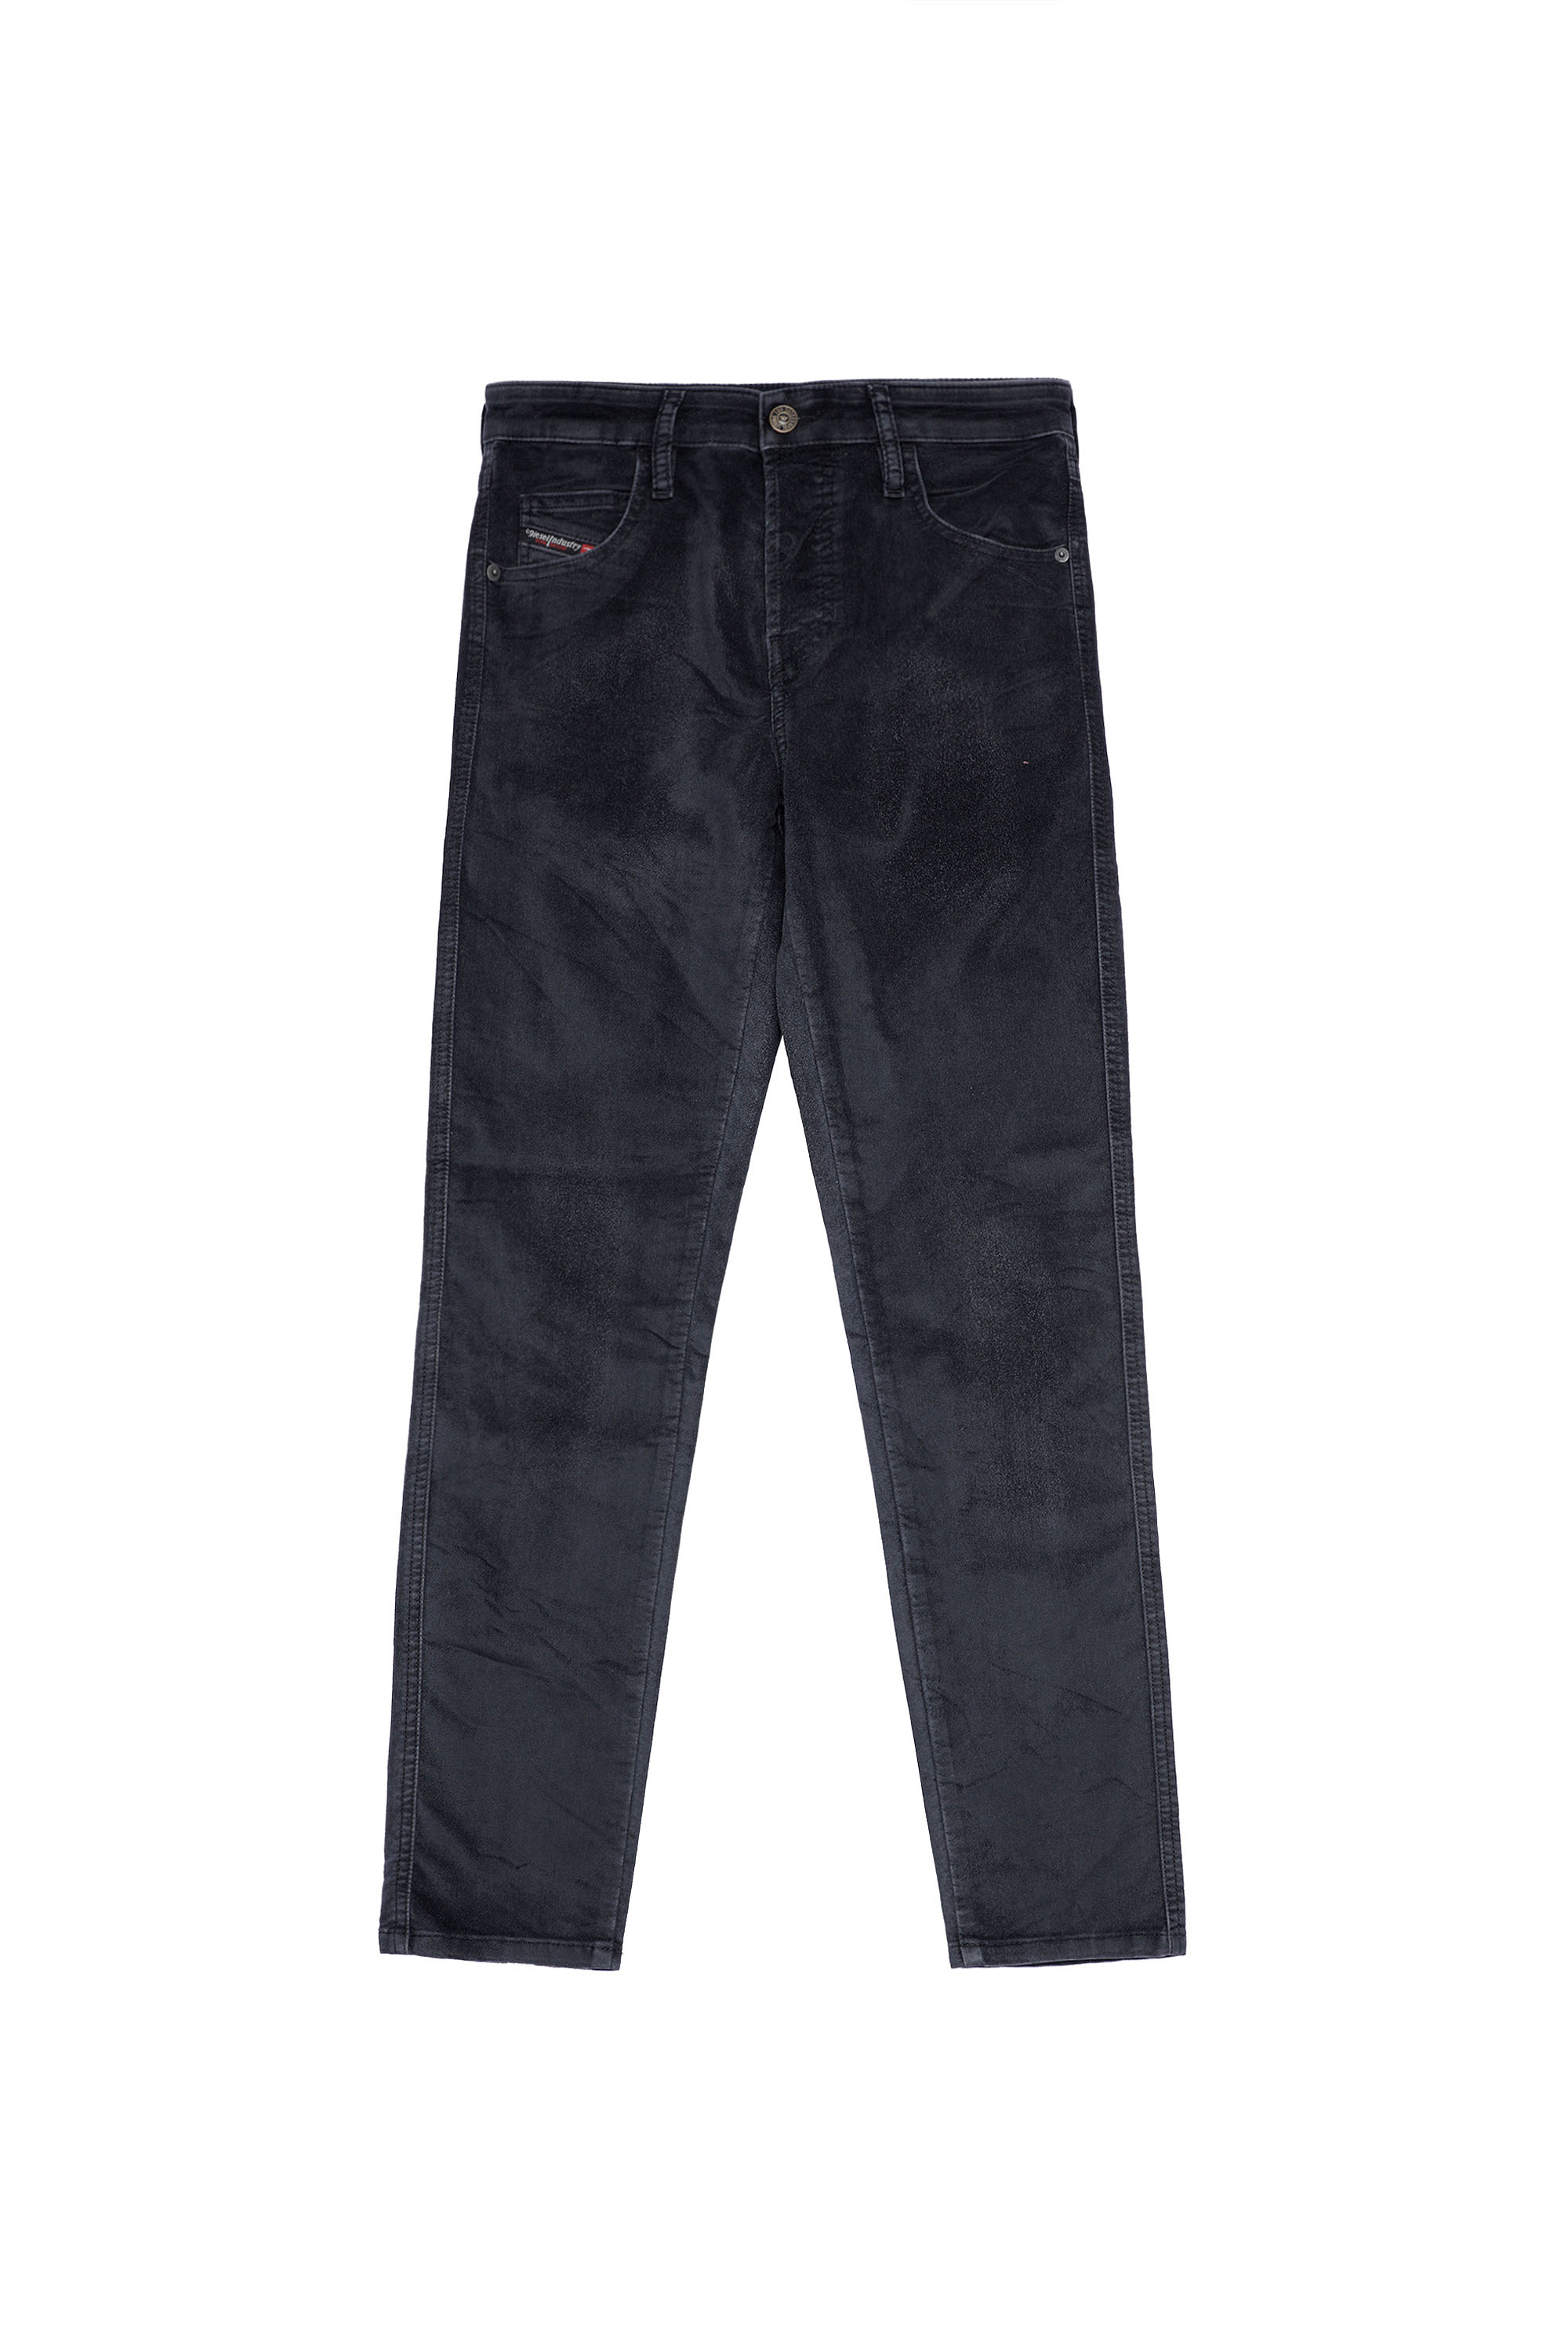 Diesel - Babhila Slim Jeans 069XI, Black/Dark grey - Image 6